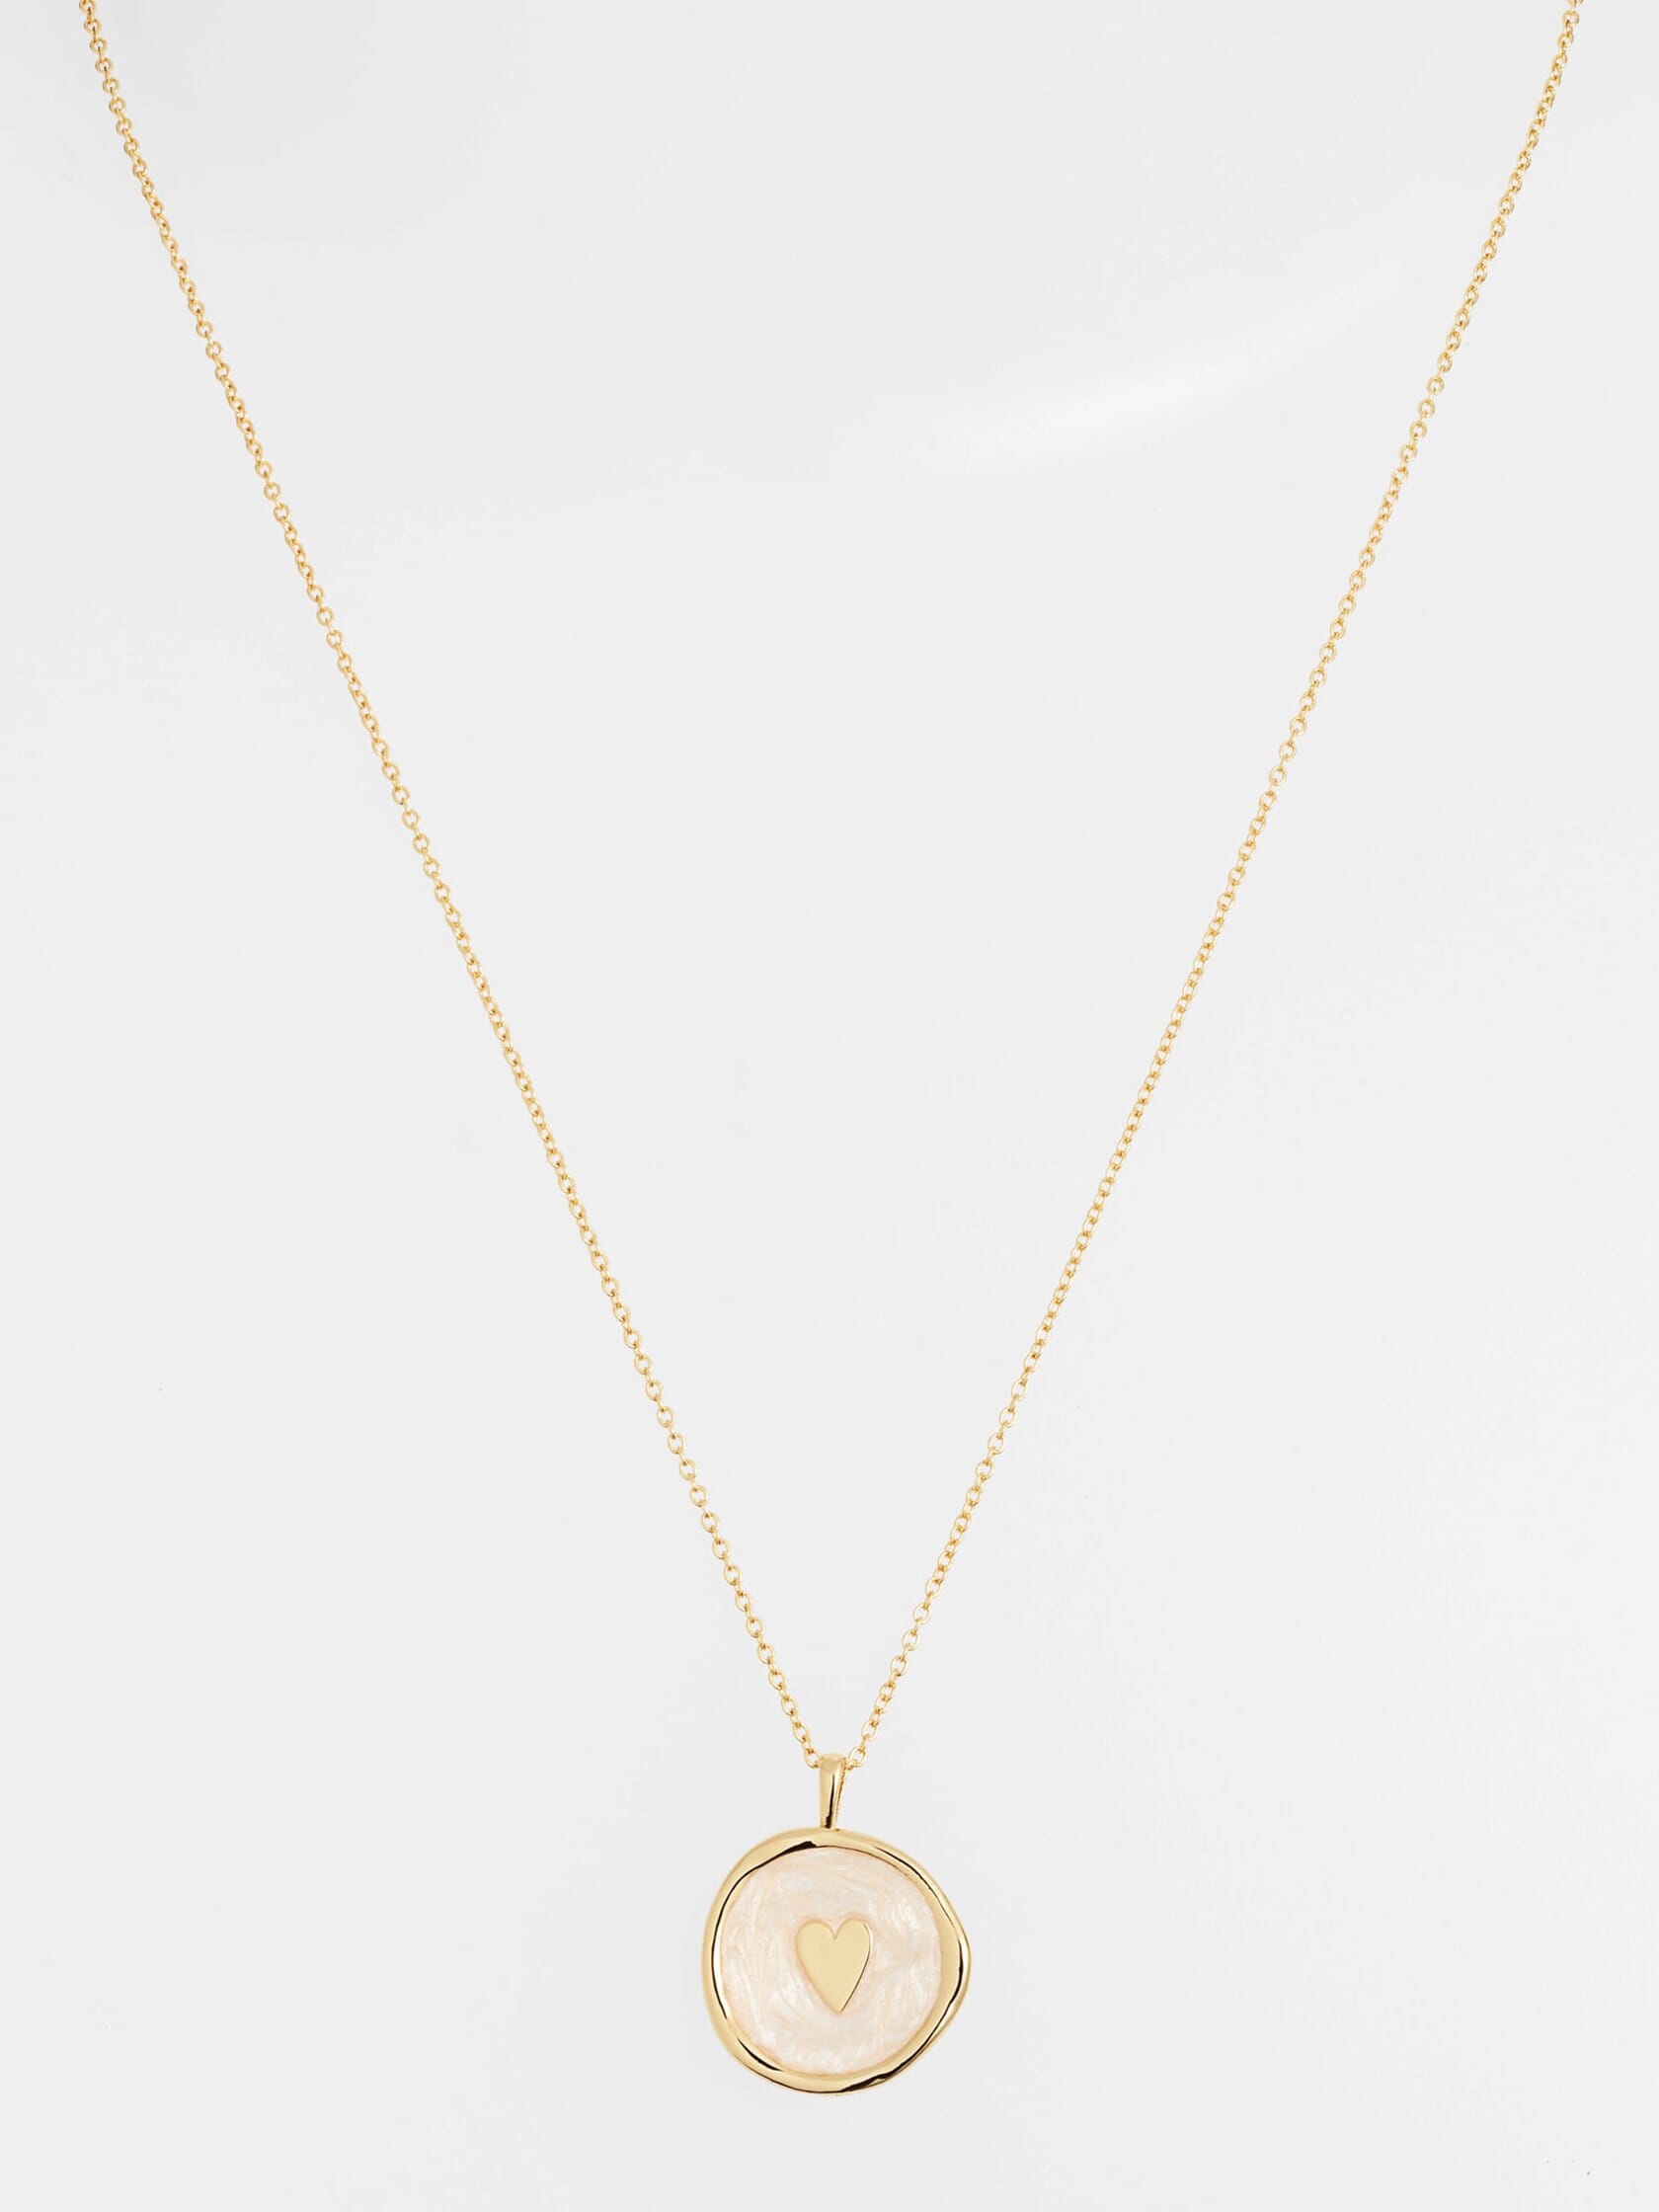 Gorjana | Heart Coin Necklace in Gold | FashionPass